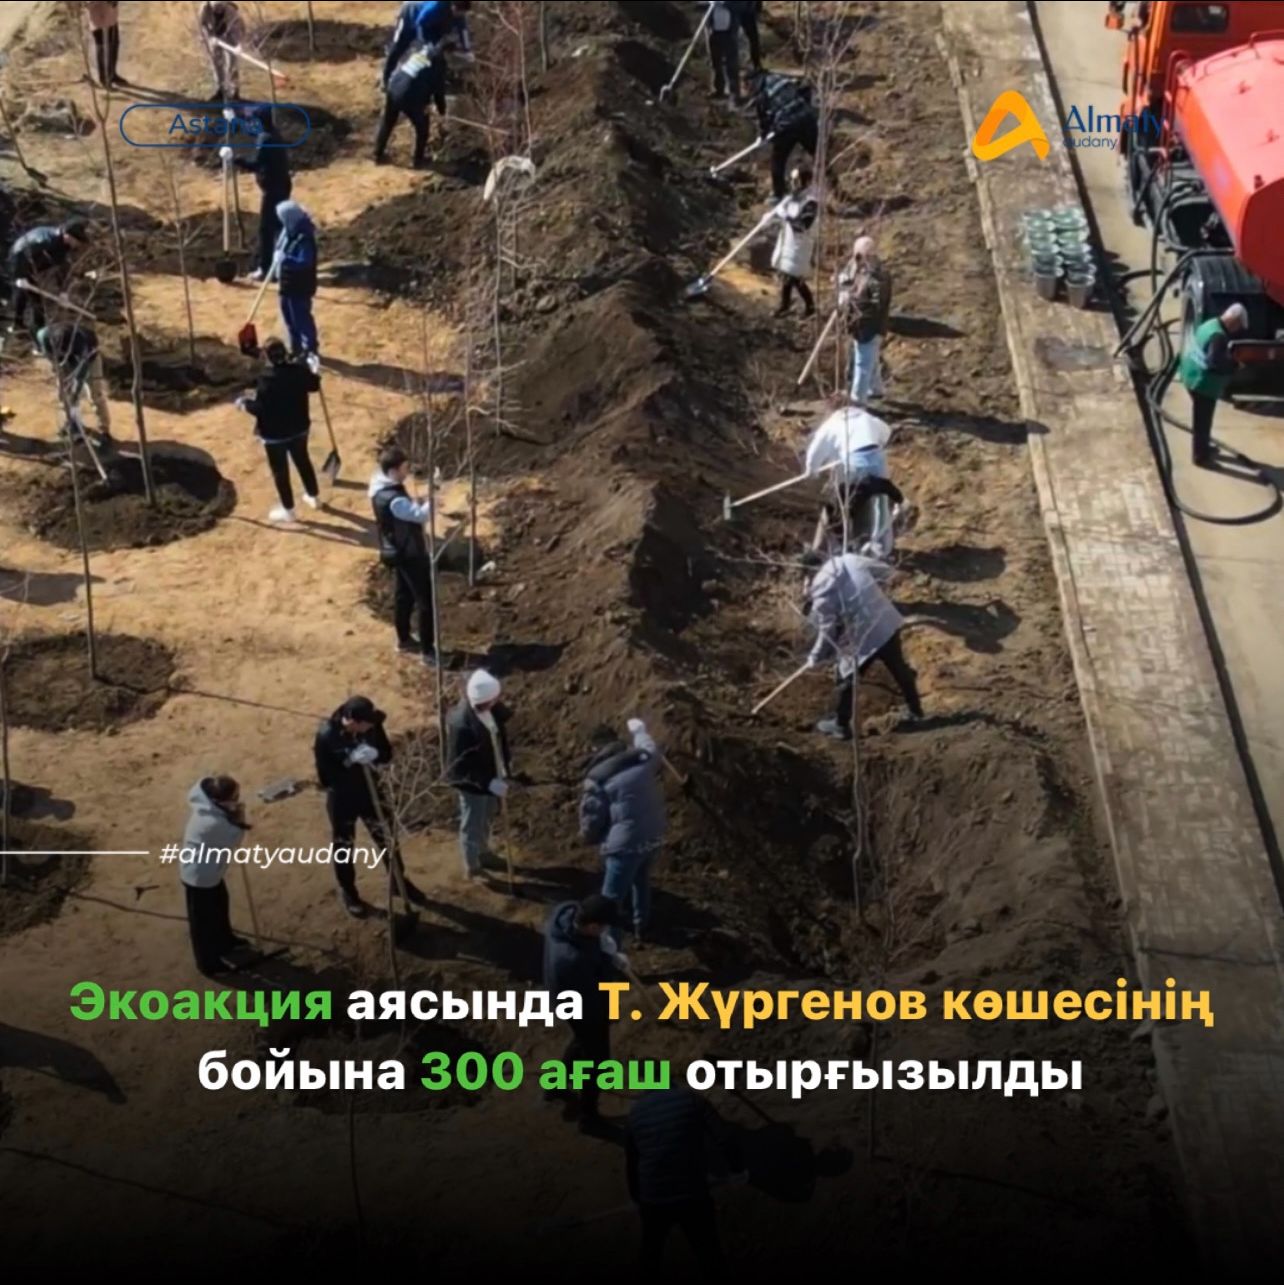 Акция аясында Т. Жүргенов көшесінің бойына 300 ағаш отырғызылды.